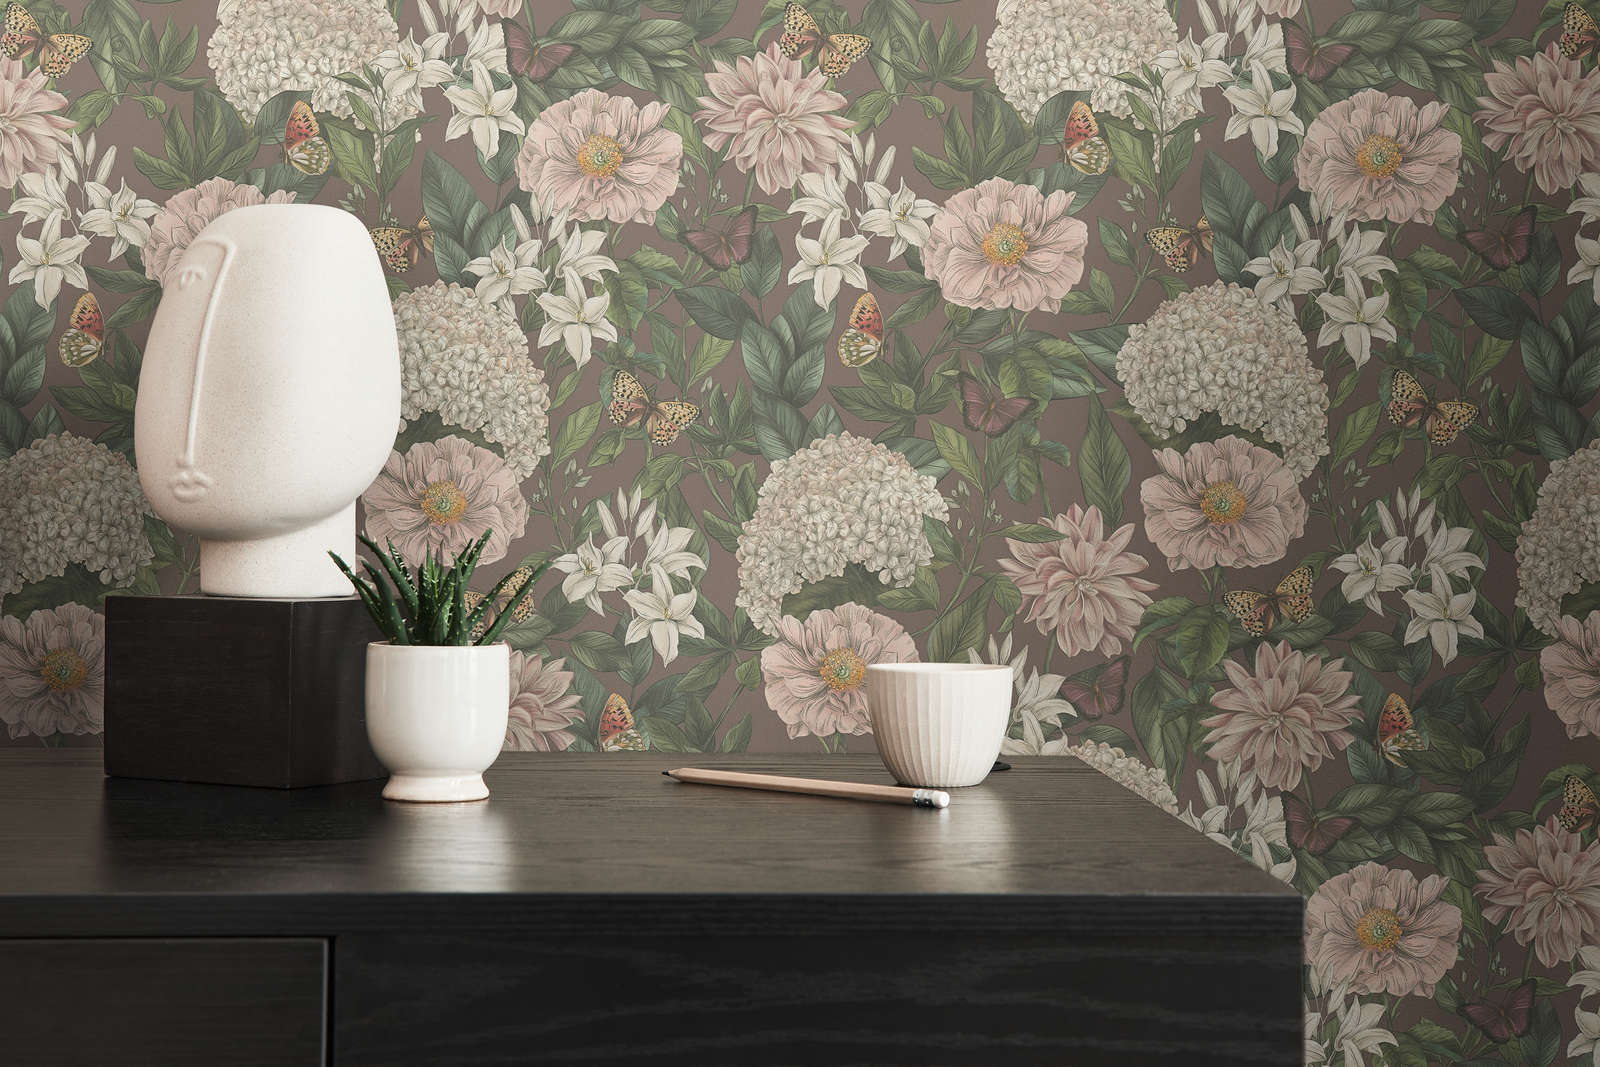             Modern wallpaper floral with flowers & butterflies textured matt - bordeaux, pink, dark green
        